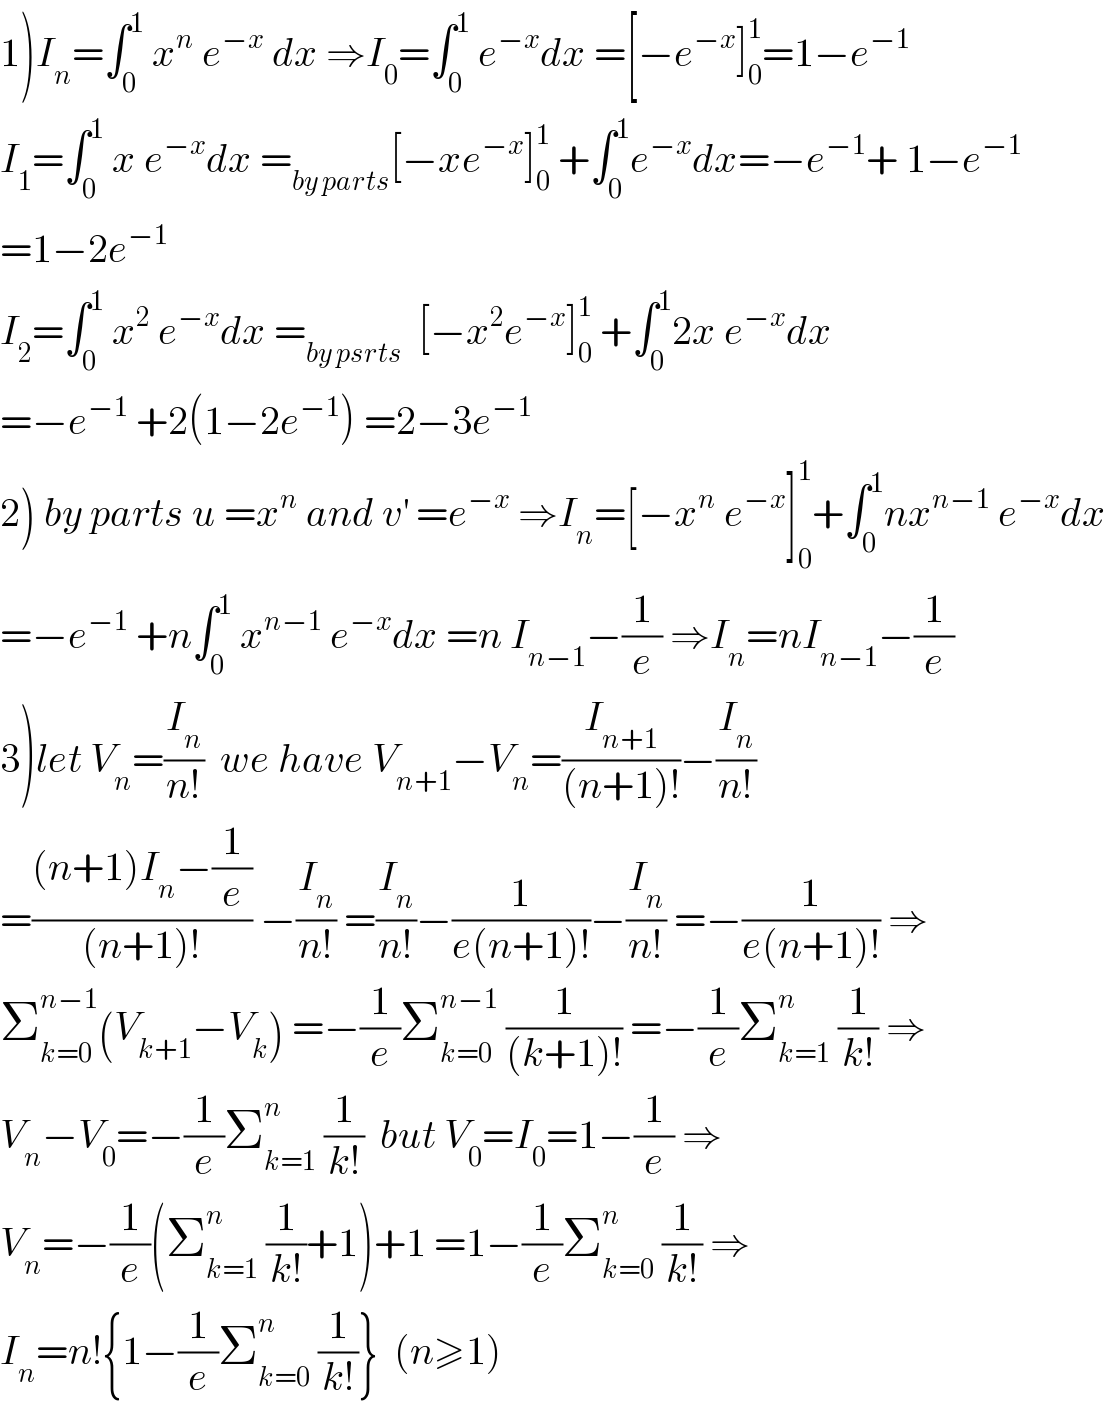 1)I_n =∫_0 ^1  x^n  e^(−x)  dx ⇒I_0 =∫_0 ^1  e^(−x) dx =[−e^(−x) ]_0 ^1 =1−e^(−1)   I_1 =∫_0 ^1  x e^(−x) dx =_(by parts) [−xe^(−x) ]_0 ^1  +∫_0 ^1 e^(−x) dx=−e^(−1) + 1−e^(−1)   =1−2e^(−1)   I_2 =∫_0 ^1  x^2  e^(−x) dx =_(by psrts)   [−x^2 e^(−x) ]_0 ^1  +∫_0 ^1 2x e^(−x) dx  =−e^(−1)  +2(1−2e^(−1) ) =2−3e^(−1)    2) by parts u =x^n  and v^′  =e^(−x)  ⇒I_n =[−x^n  e^(−x) ]_0 ^1 +∫_0 ^1 nx^(n−1)  e^(−x) dx  =−e^(−1)  +n∫_0 ^1  x^(n−1)  e^(−x) dx =n I_(n−1) −(1/e) ⇒I_n =nI_(n−1) −(1/e)  3)let V_n =(I_n /(n!))  we have V_(n+1) −V_n =(I_(n+1) /((n+1)!))−(I_n /(n!))  =(((n+1)I_n −(1/e))/((n+1)!)) −(I_n /(n!)) =(I_n /(n!))−(1/(e(n+1)!))−(I_n /(n!)) =−(1/(e(n+1)!)) ⇒  Σ_(k=0) ^(n−1) (V_(k+1) −V_k ) =−(1/e)Σ_(k=0) ^(n−1)  (1/((k+1)!)) =−(1/e)Σ_(k=1) ^n  (1/(k!)) ⇒  V_n −V_0 =−(1/e)Σ_(k=1) ^n  (1/(k!))  but V_0 =I_0 =1−(1/e) ⇒  V_n =−(1/e)(Σ_(k=1) ^n  (1/(k!))+1)+1 =1−(1/e)Σ_(k=0) ^n  (1/(k!)) ⇒  I_n =n!{1−(1/e)Σ_(k=0) ^n  (1/(k!))}  (n≥1)  